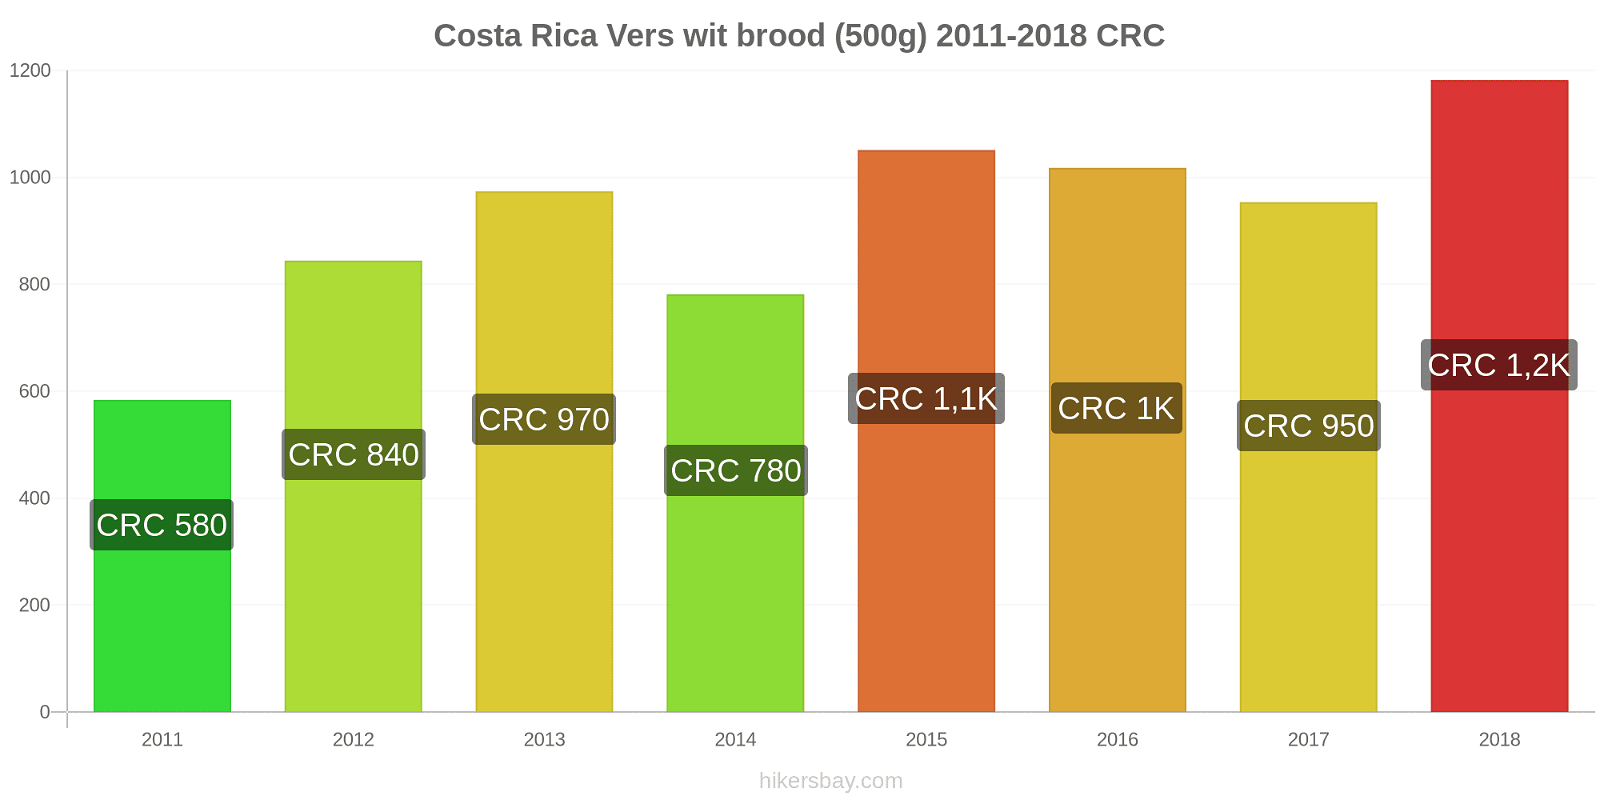 Costa Rica prijswijzigingen Een brood van vers wit brood (500g) hikersbay.com